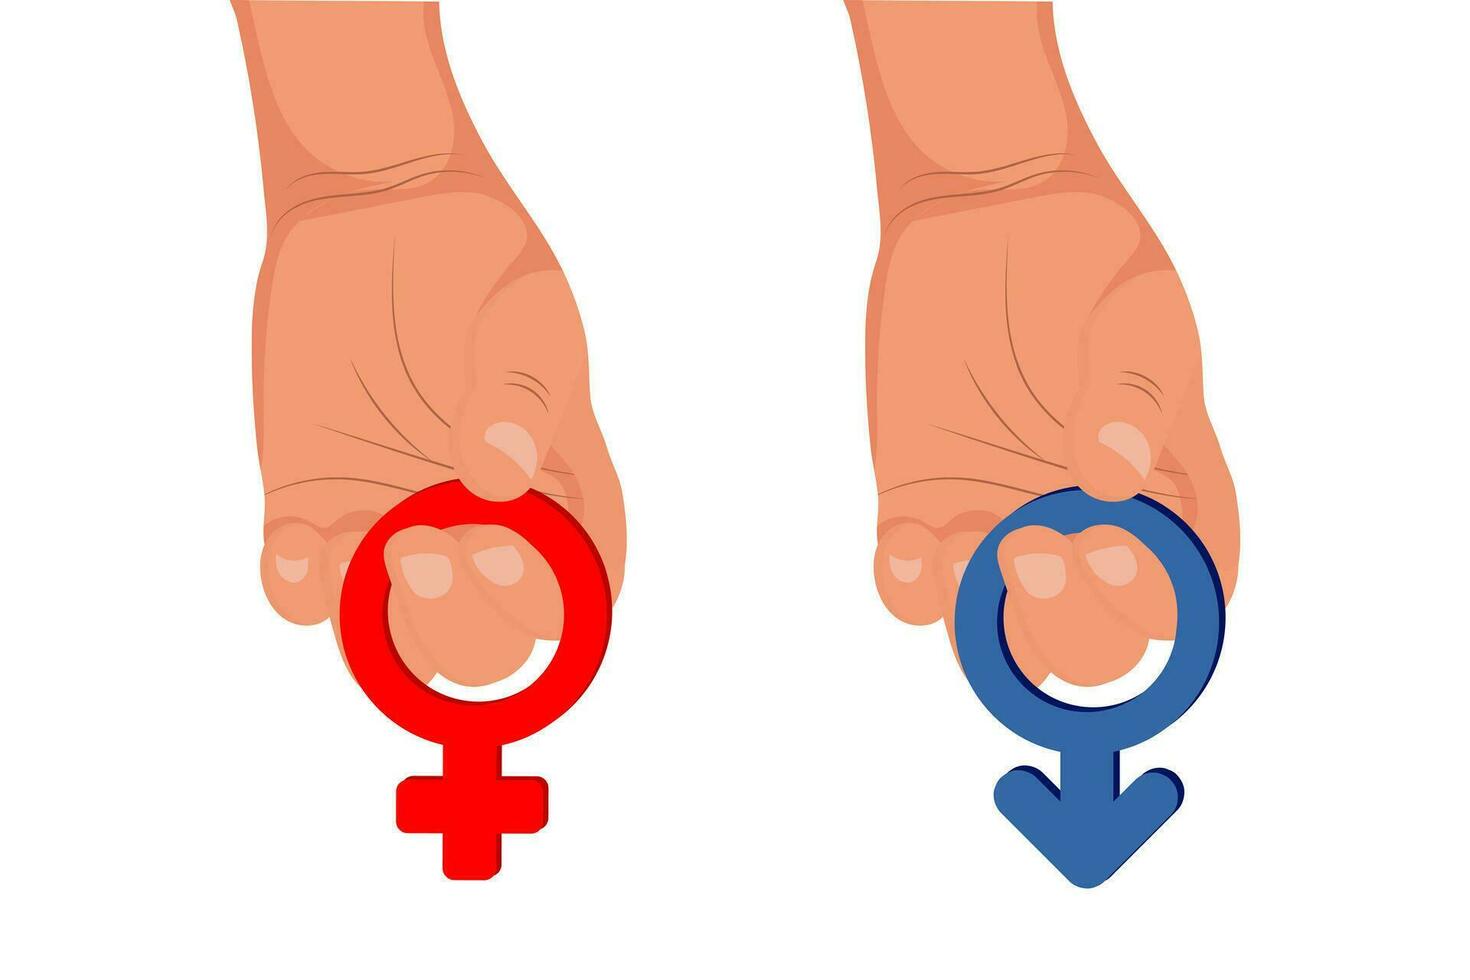 il mano detiene il femmina e maschio simboli. Genere segni di donna e uomo nel mano. illustrazione, vettore